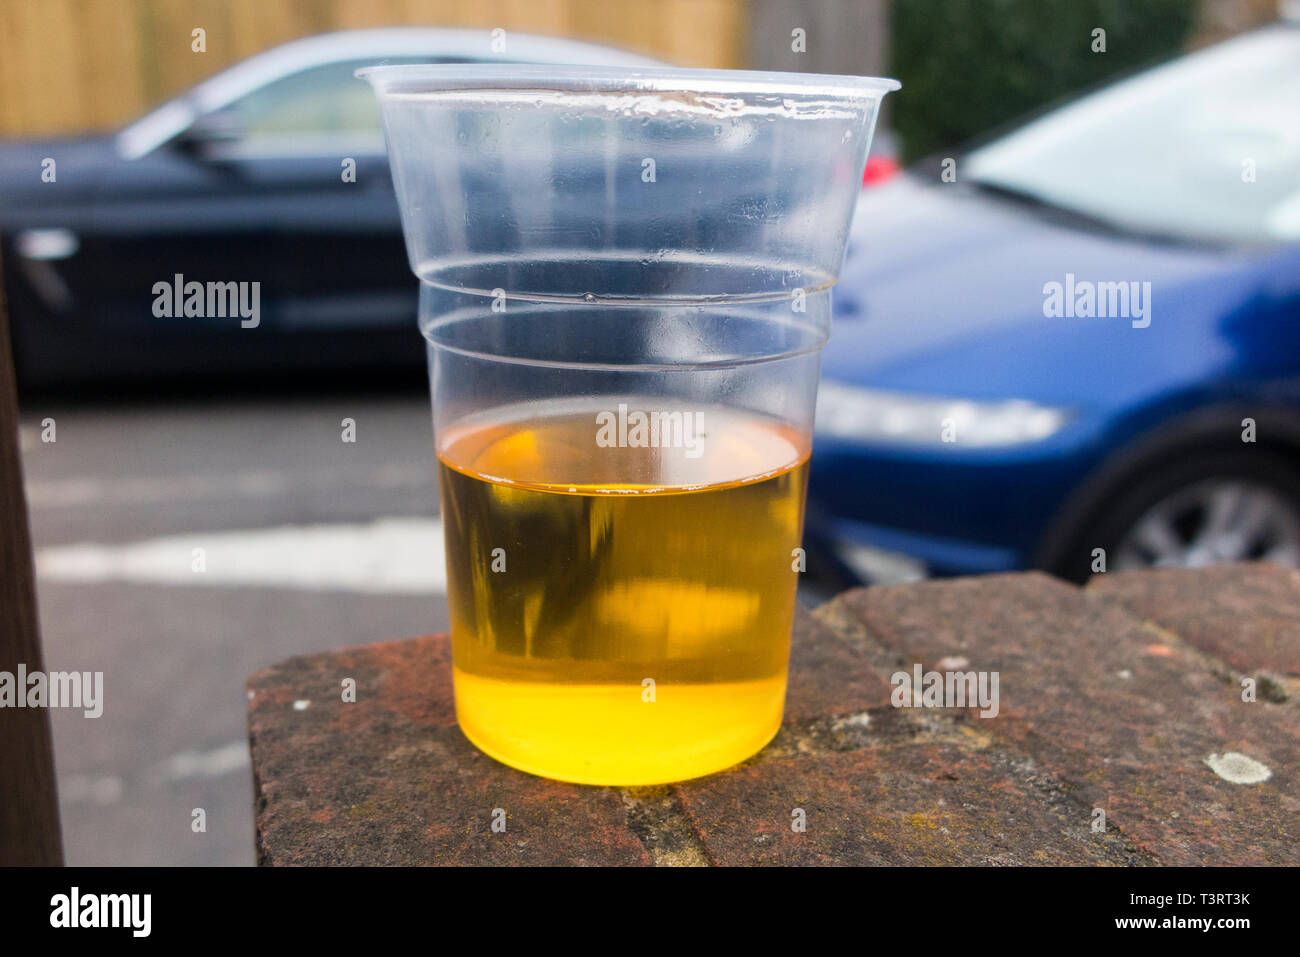 Déménagement voiture passé un semestre de bécher en plastique vide lager pour illustrer le thème de la bu / verre conducteur, et conduite automobile sous l'influence de l'alcool. Angleterre (108) Banque D'Images